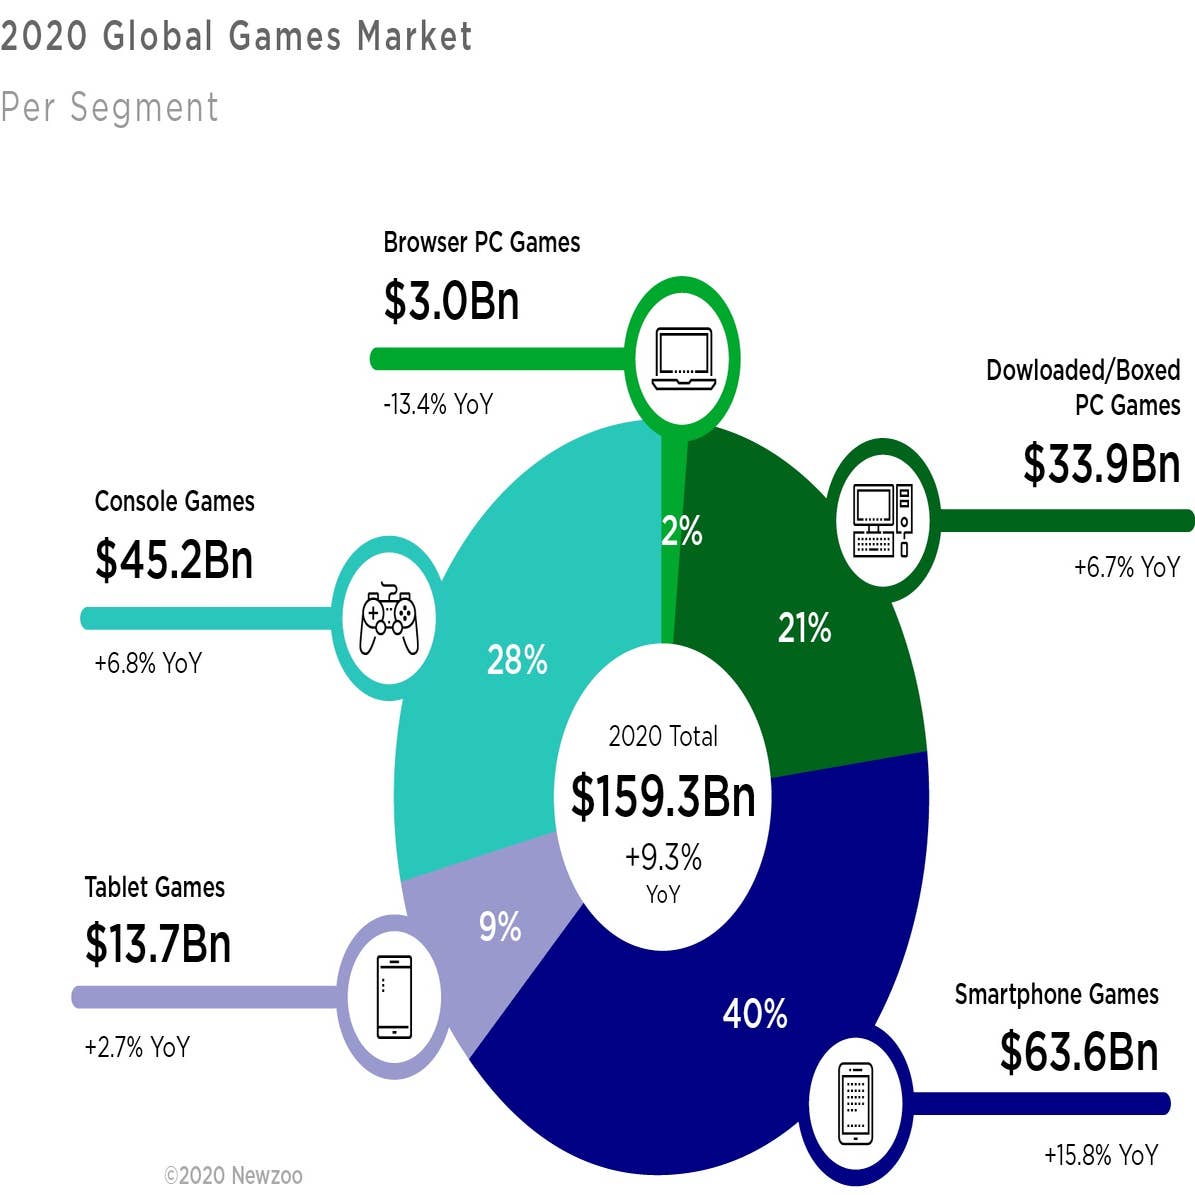 Newzoo_2020_Global_Games_Market_per_Segment_1.jpg